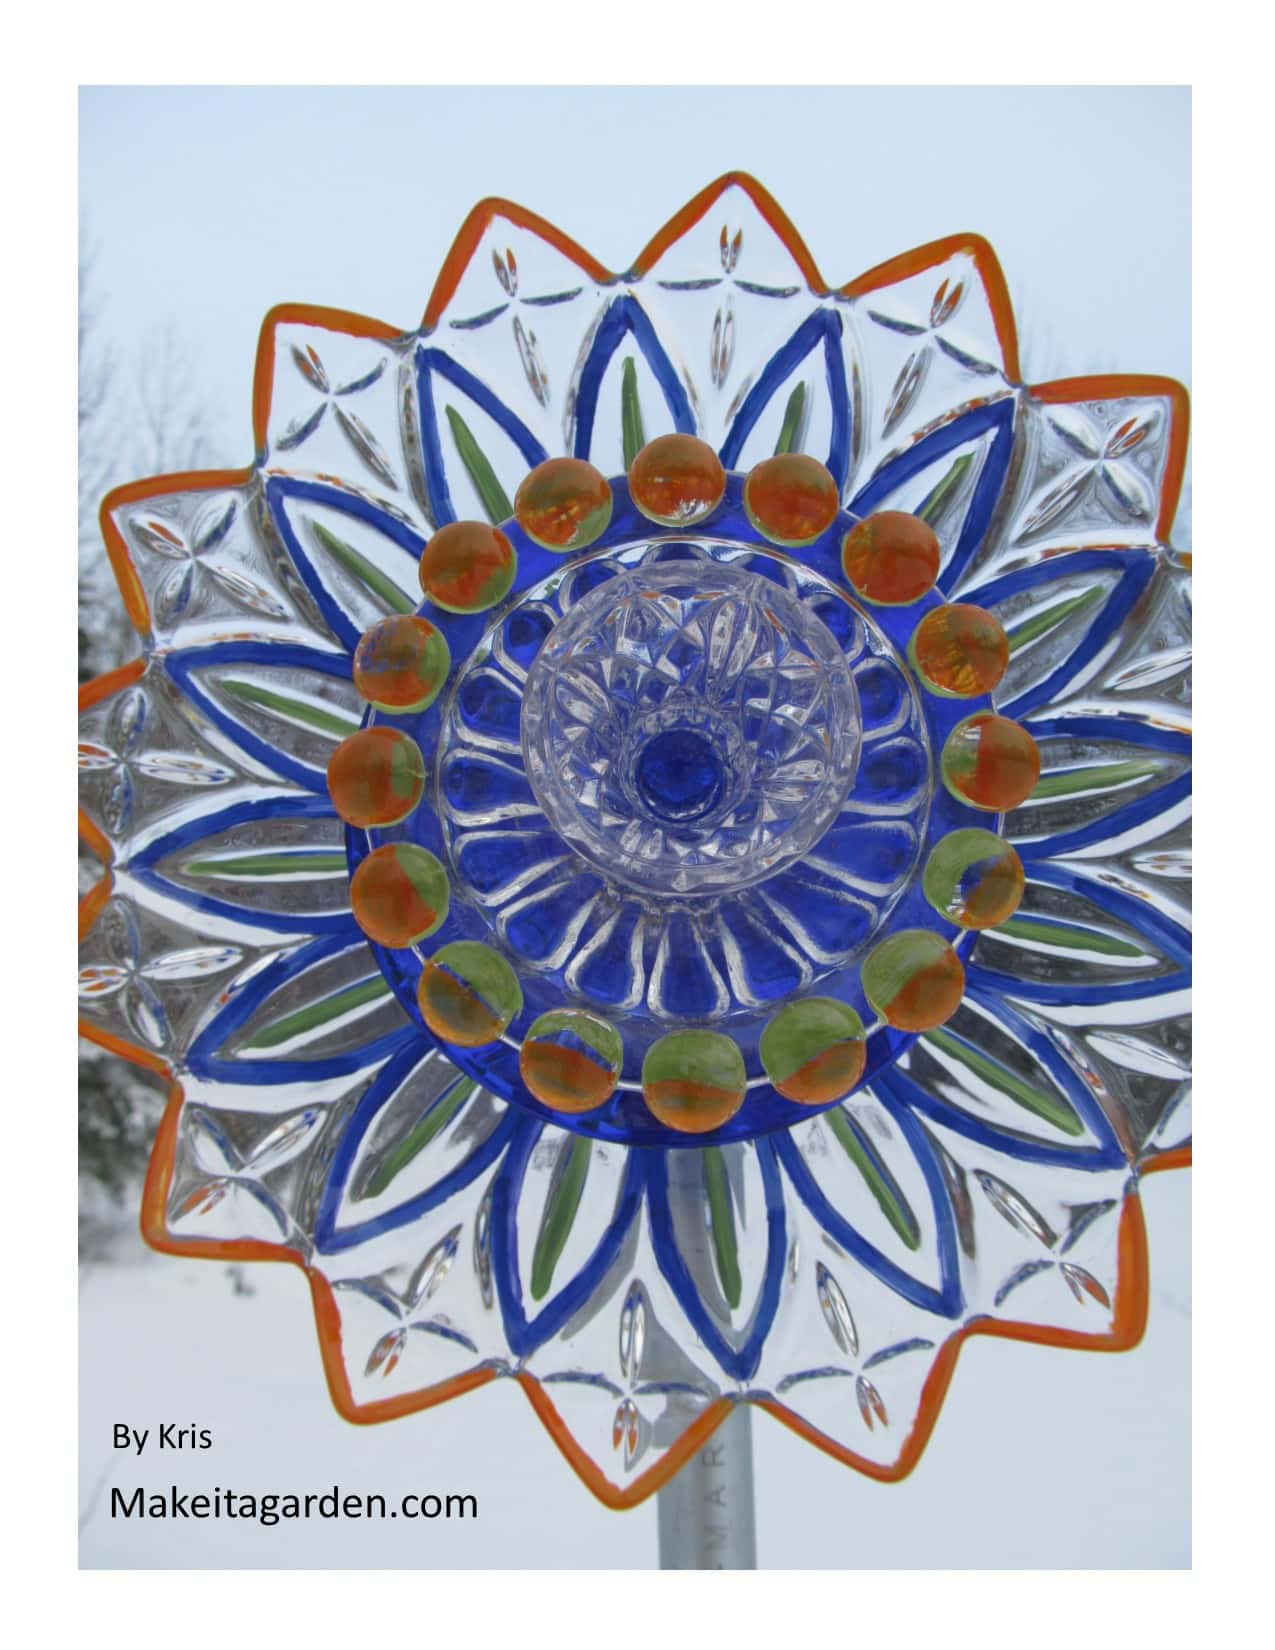 kunstnerens skålblomst. En smuk, blomst form glasskål bruges til at male på glasplader